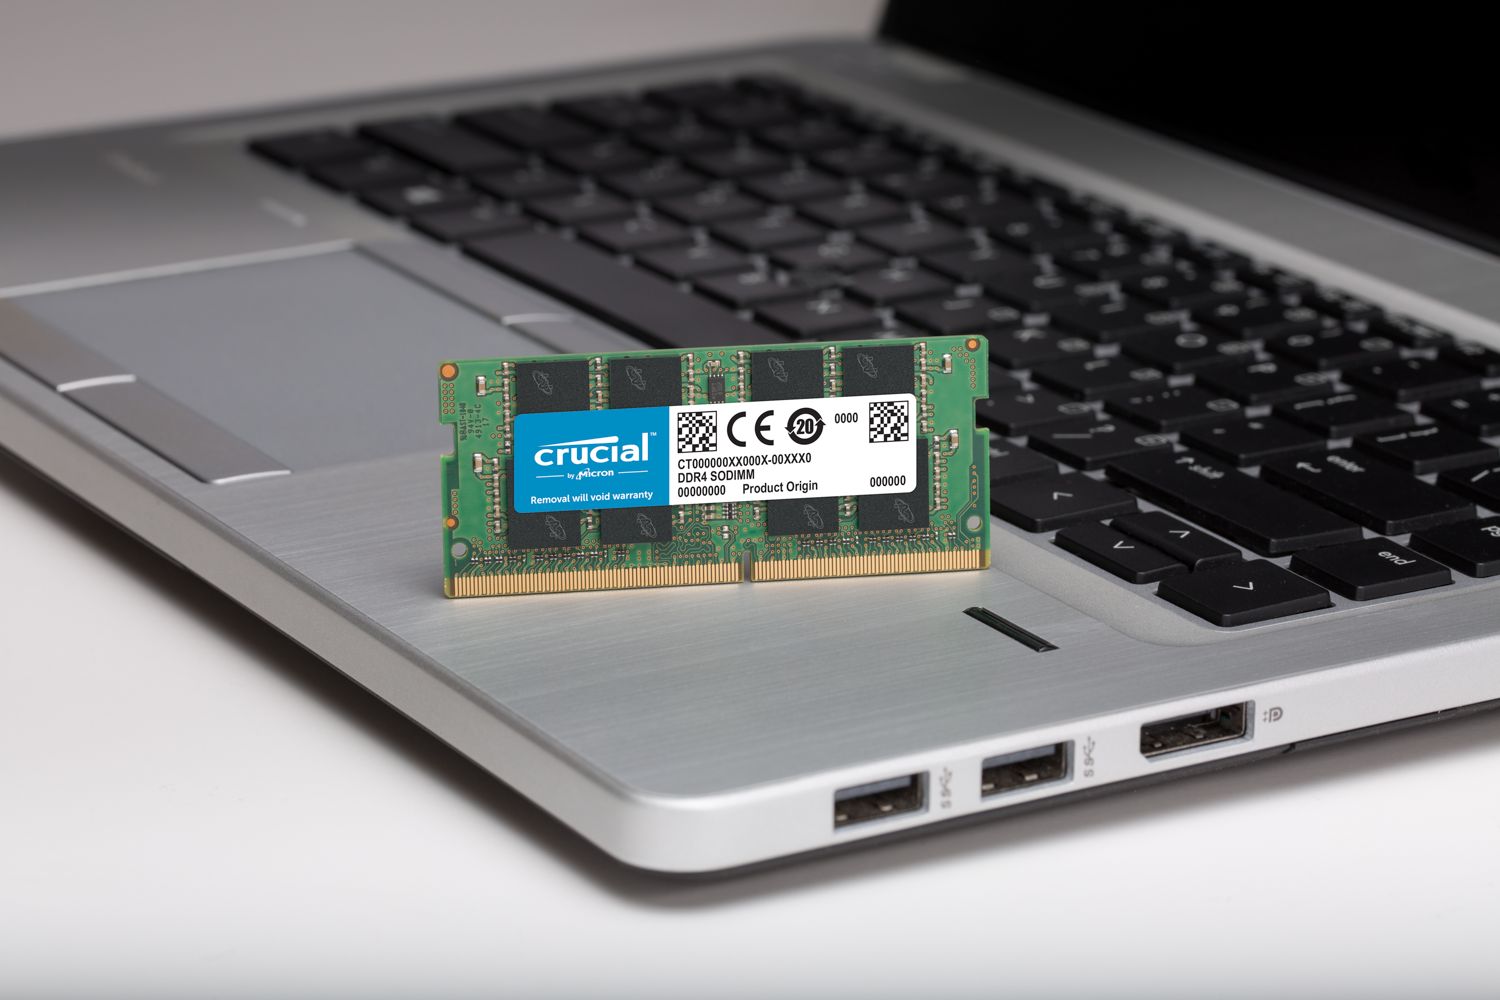 2 x Crucial 4GB DDR3L-1600 SODIMM (Laptop RAM), Eastern Pretoria